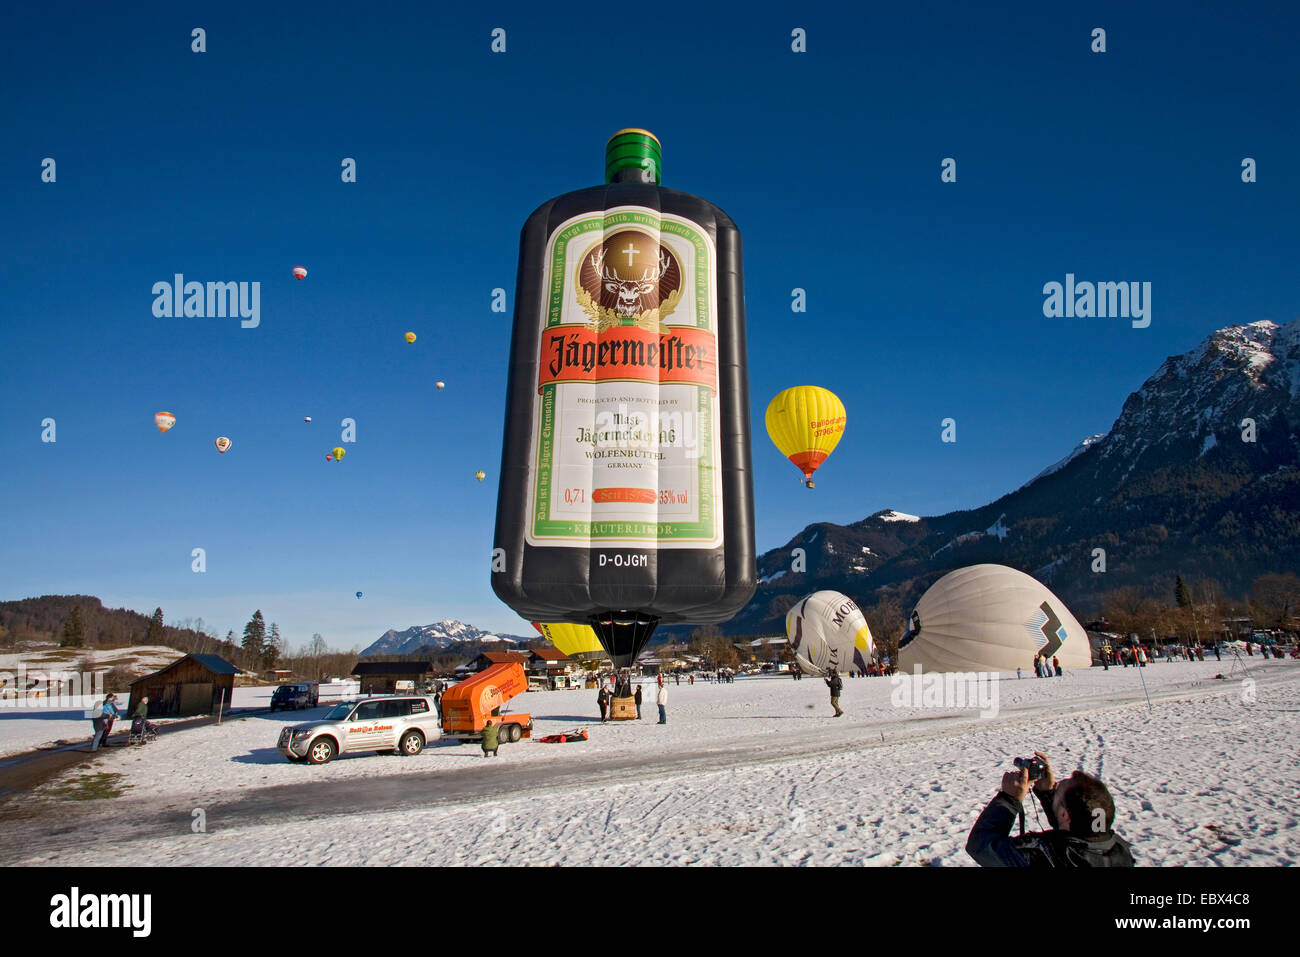 Hot Air balloon festival su un campo di neve con diversi palloncini essendo preparato per l'inizio o dopo aver preso il largo e un sacco di spettatori, in Germania, in Baviera, Allgaeu, Oberstdorf Foto Stock